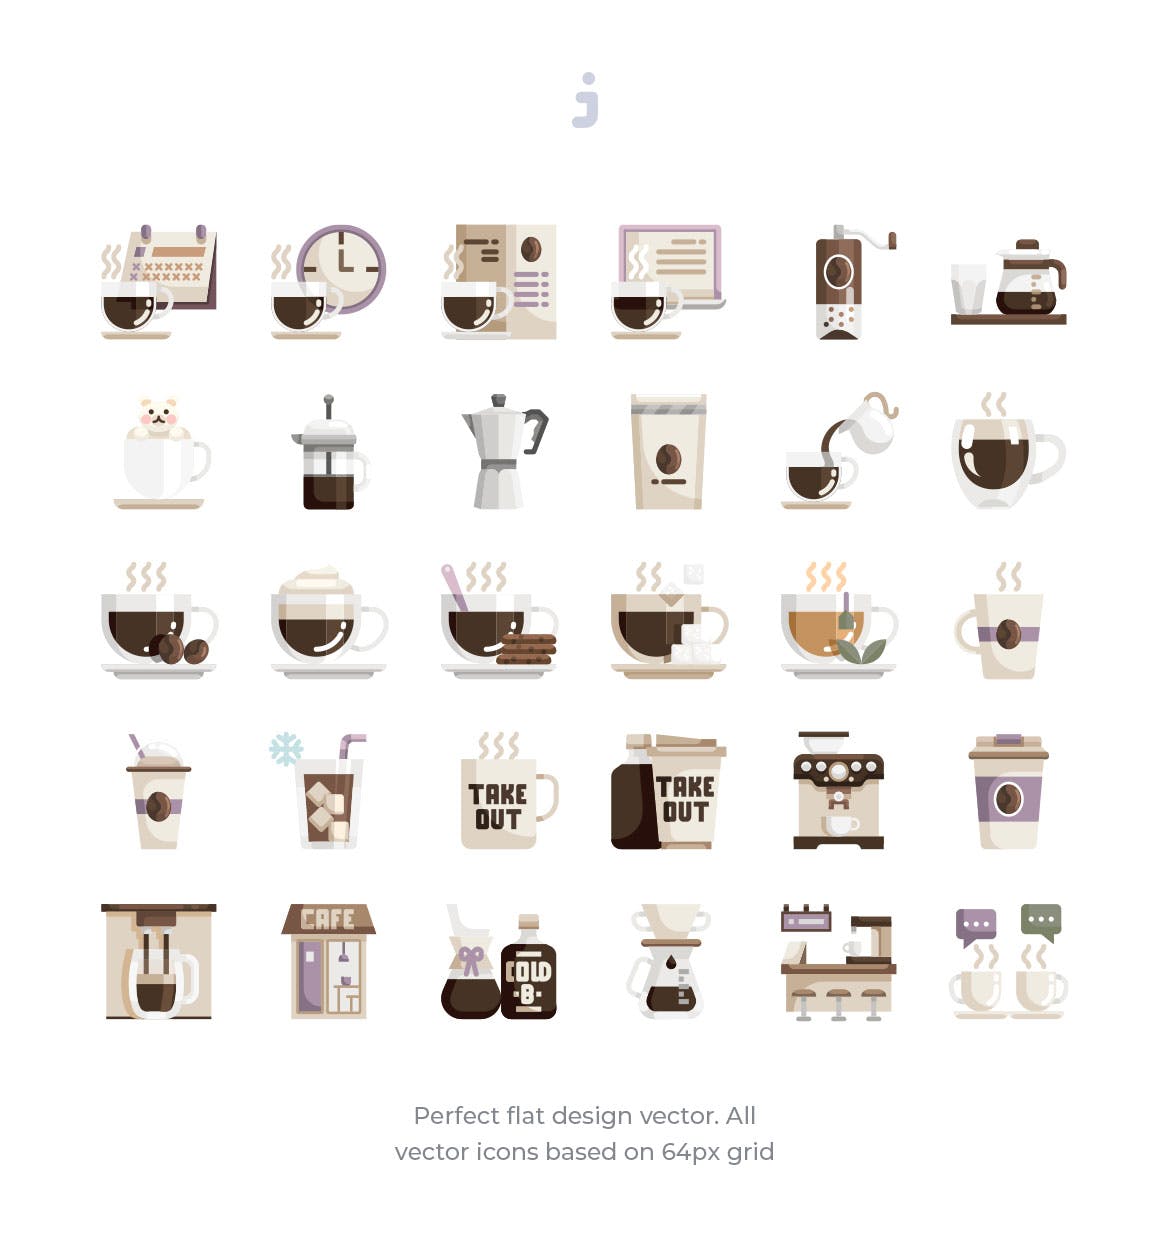 30枚咖啡/咖啡店扁平设计风格矢量第一素材精选图标素材 30 Coffee Shop Icons – Flat插图(1)